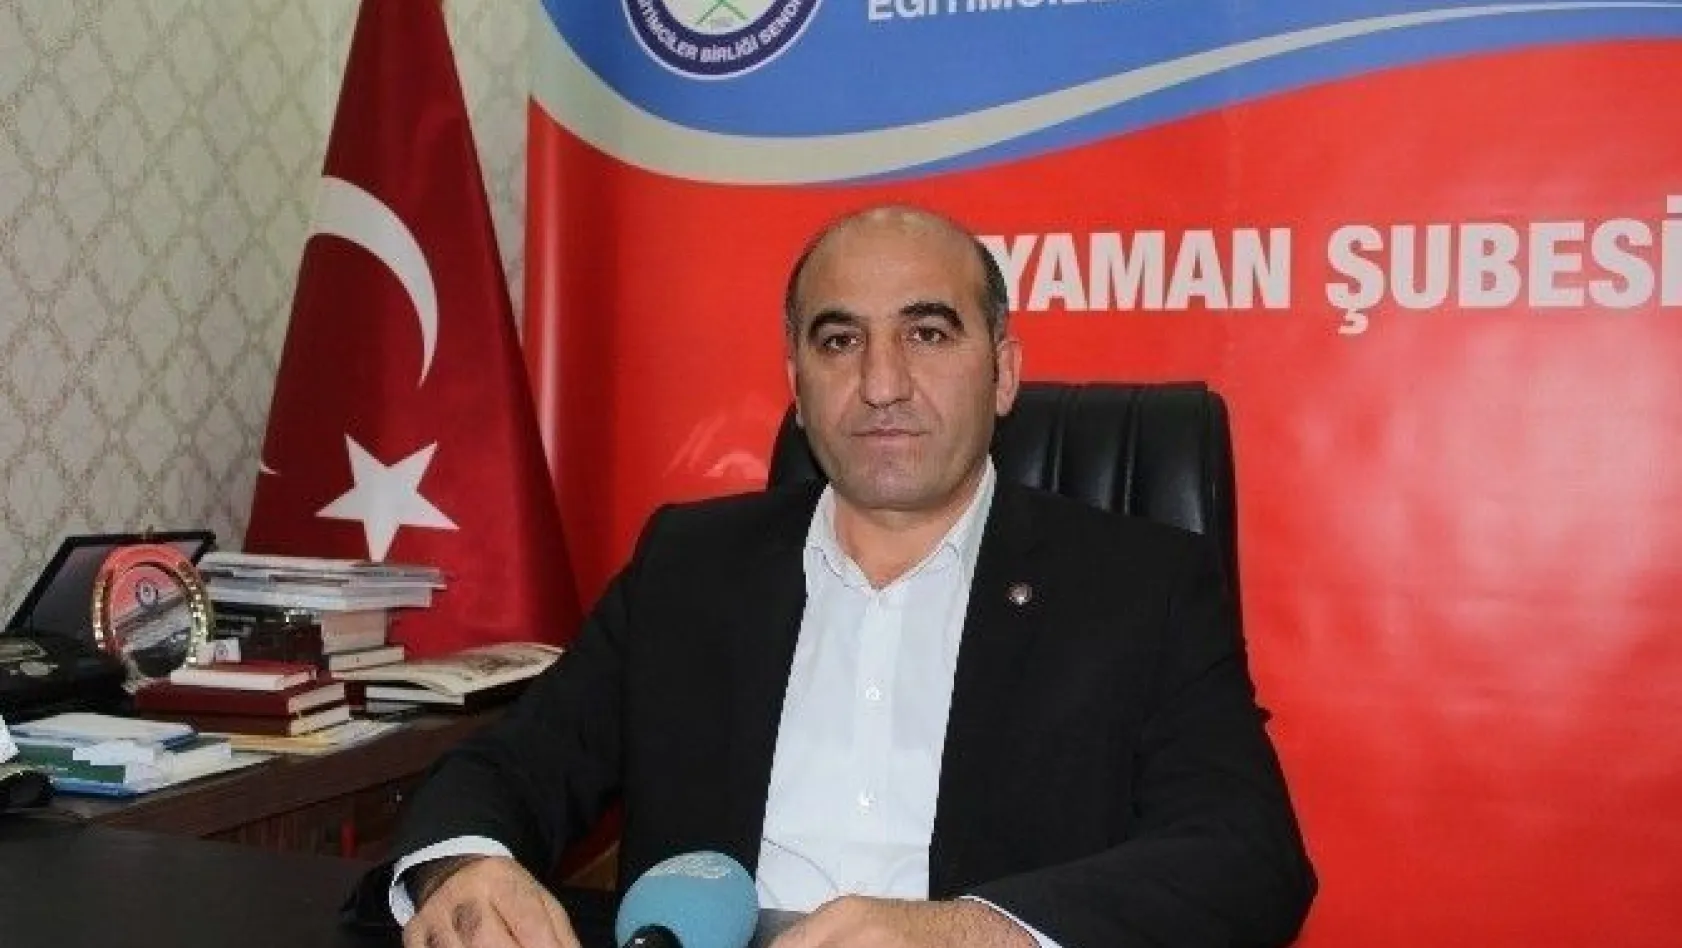 Eğitim Birsen Adıyaman Şubesi Başkanı Ali Deniz'in Ankara temasları
